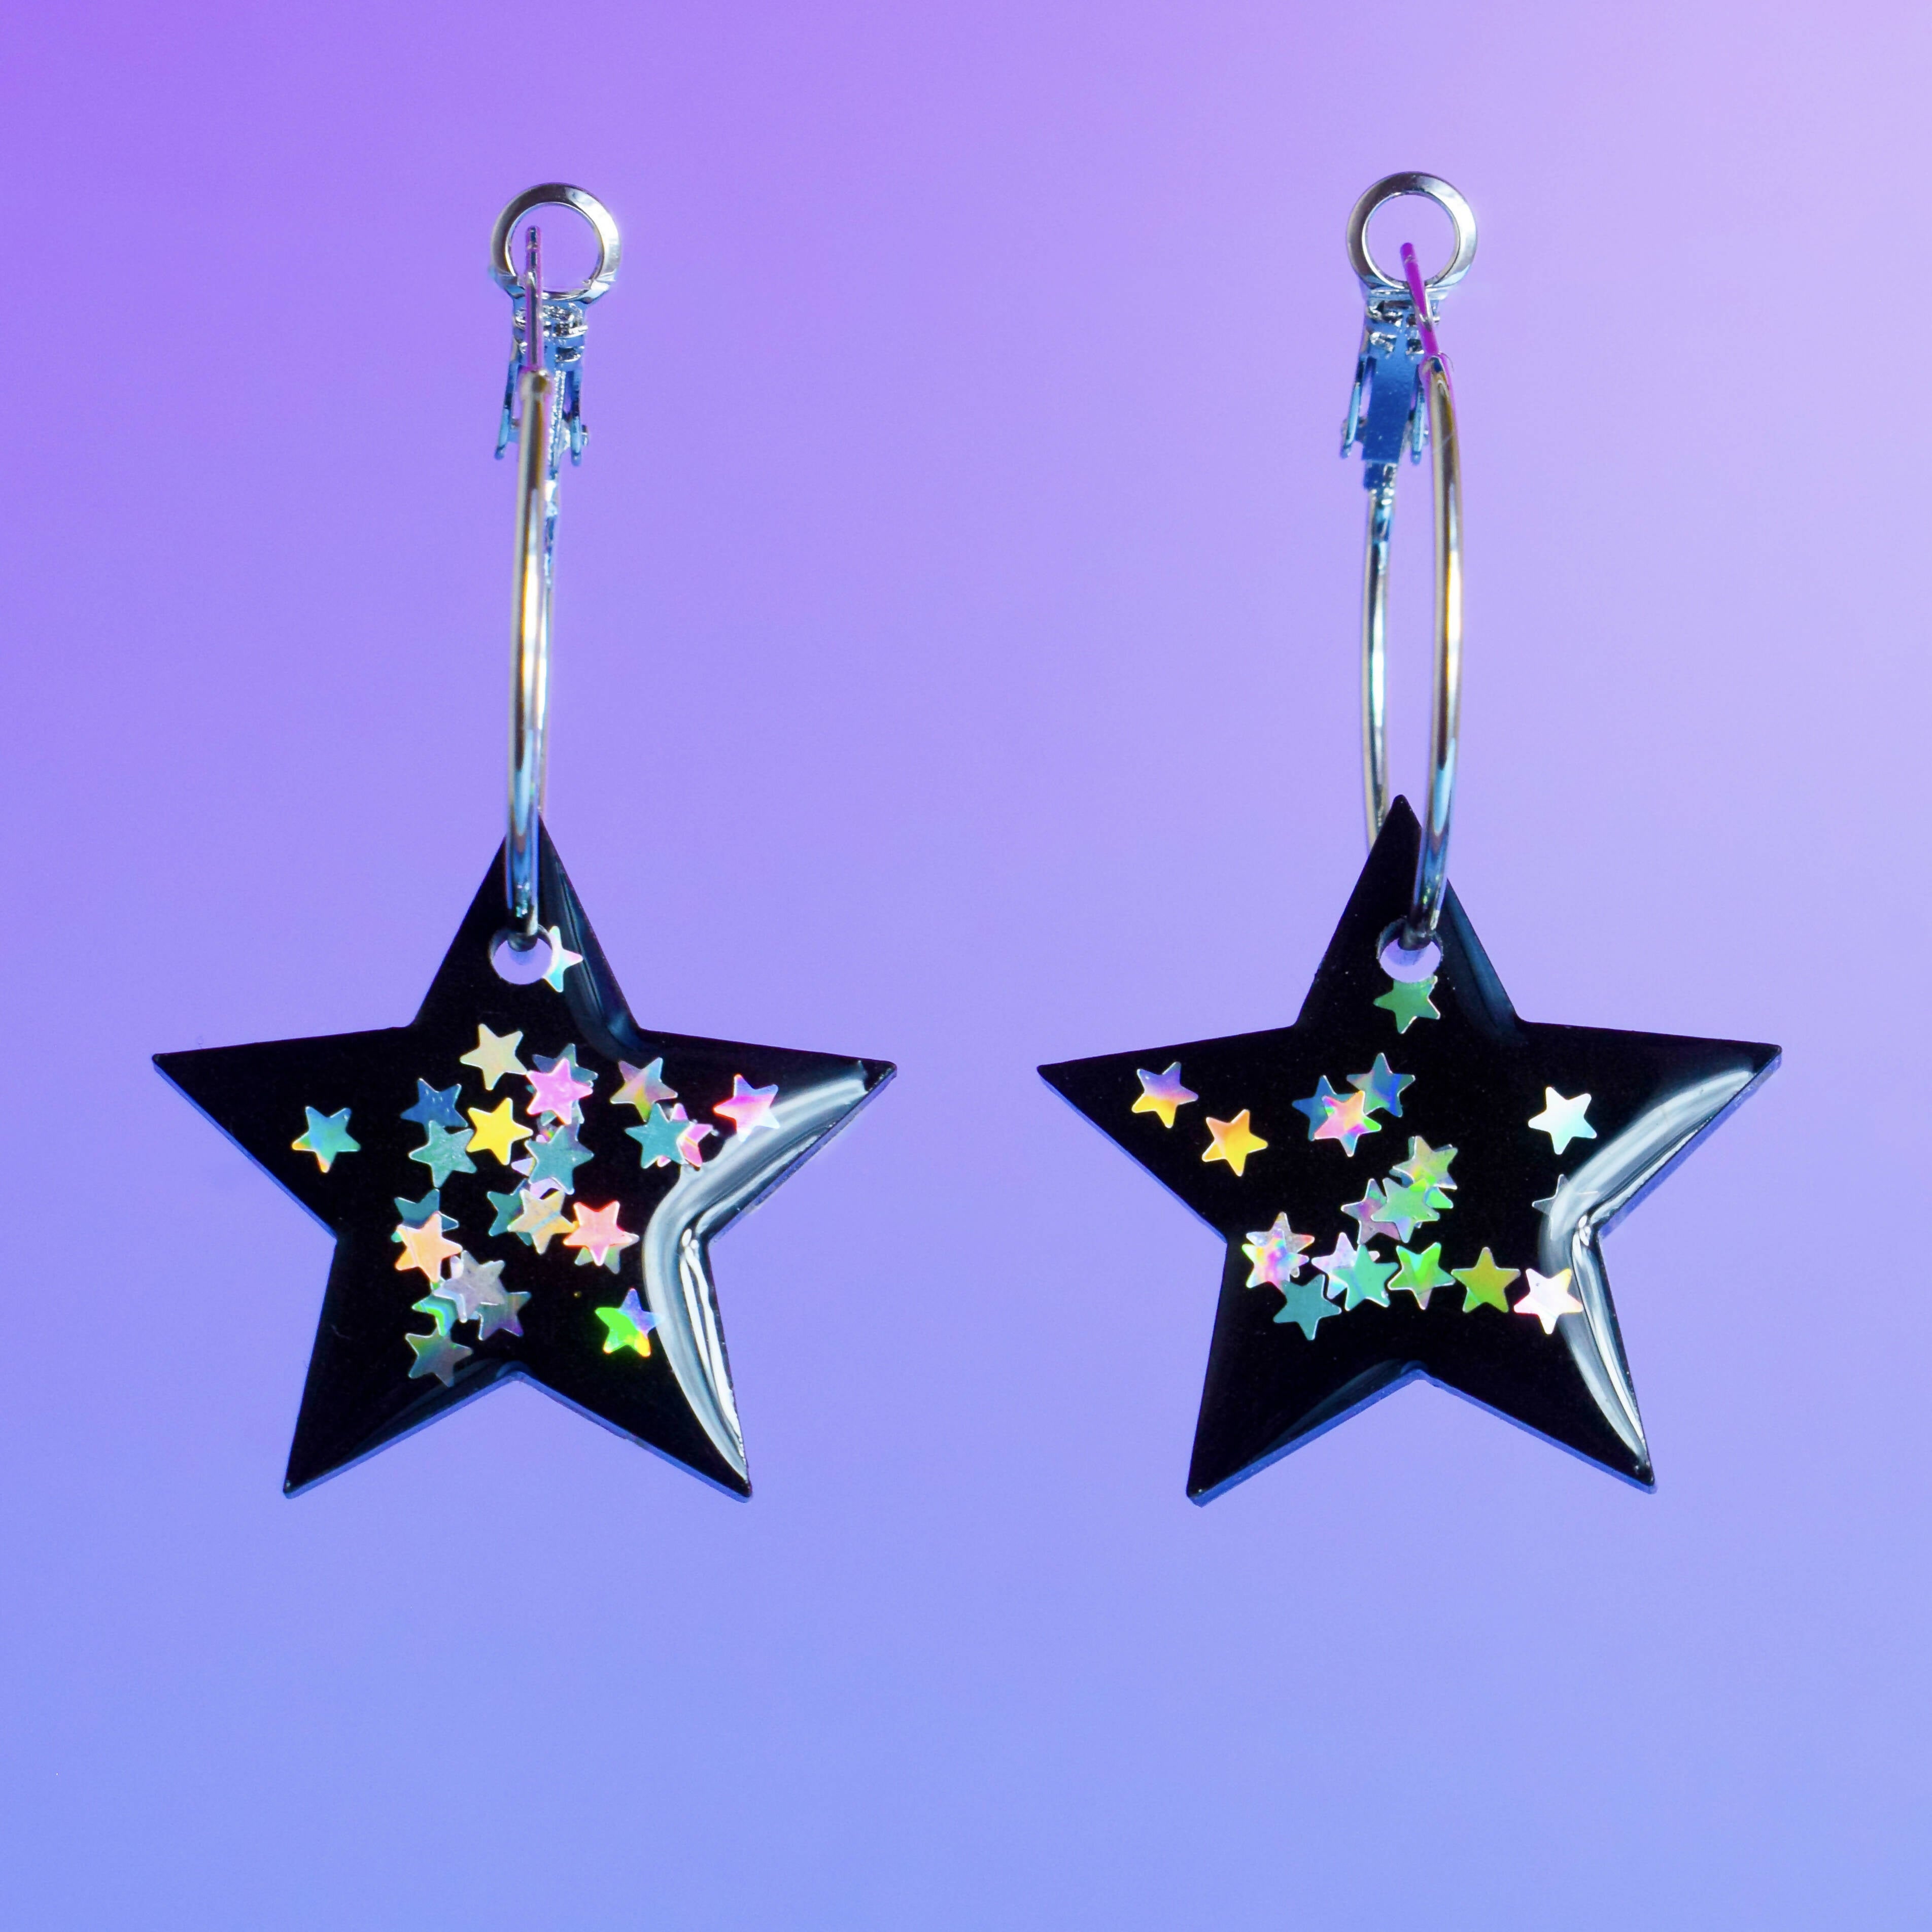 Star Shaped Silver Hoop Earrings Resin Festival Earrings Colour Shift Glitter Statement Earrings Halloween Earrings Starry Night